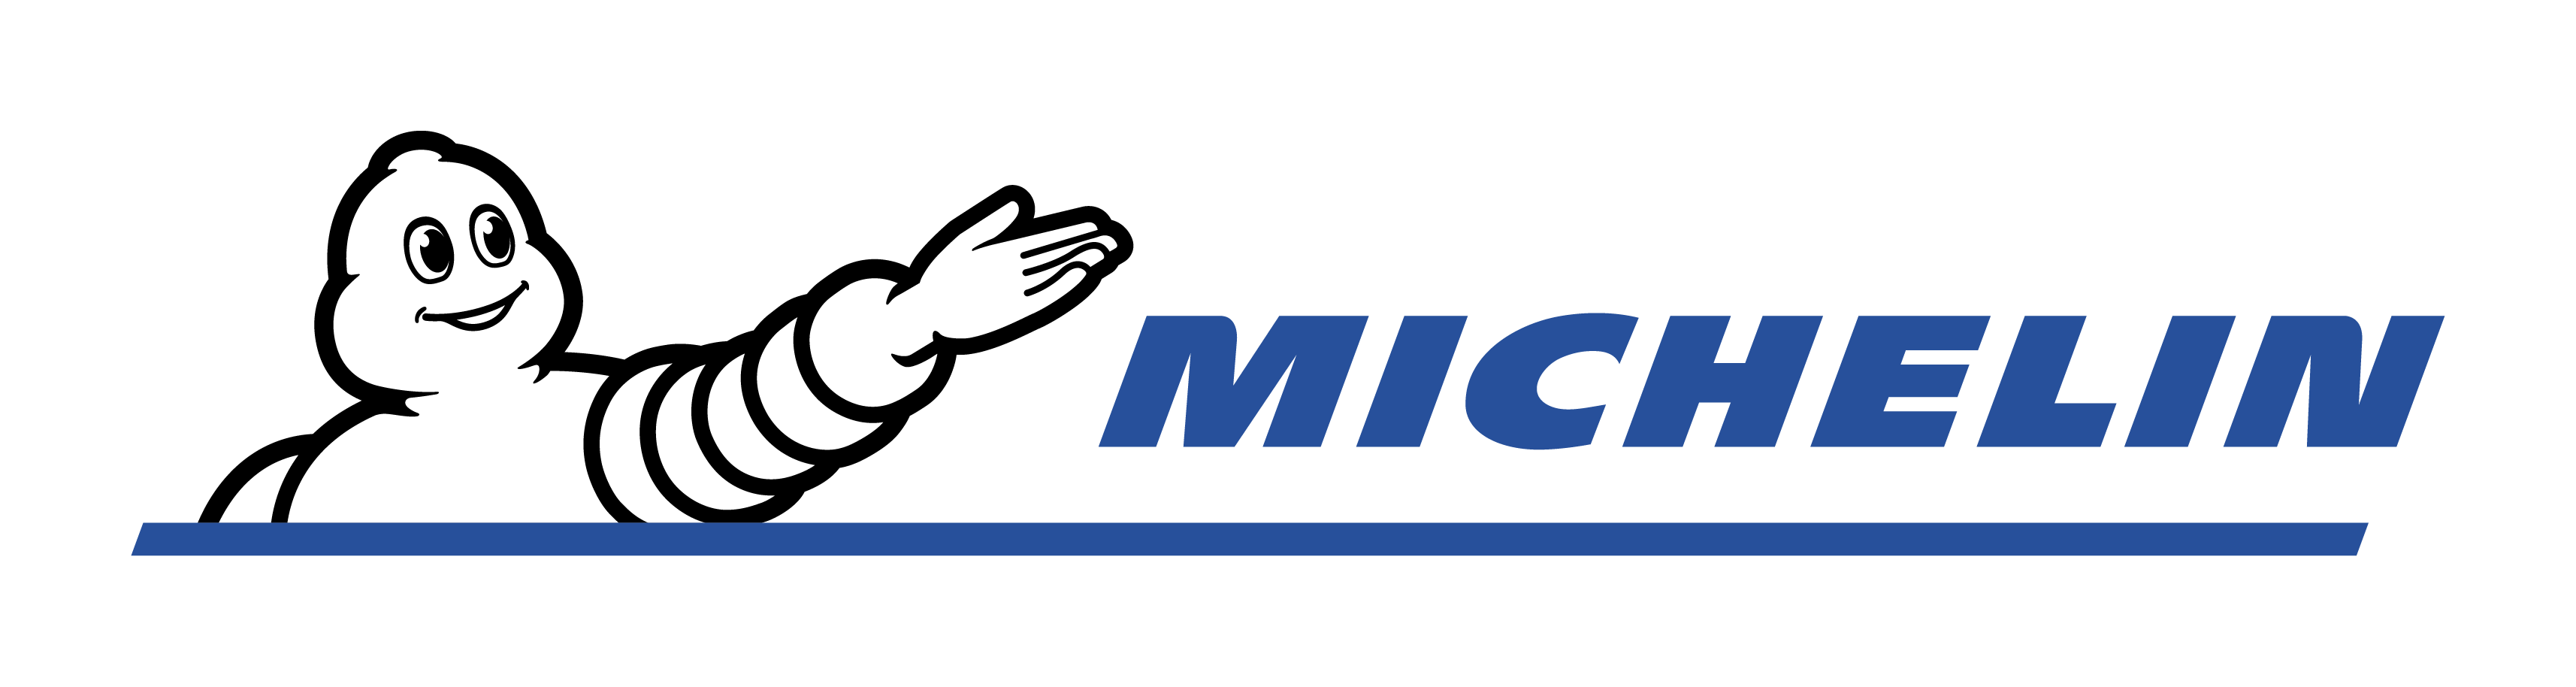 Michelin announces the acquisition of Flex